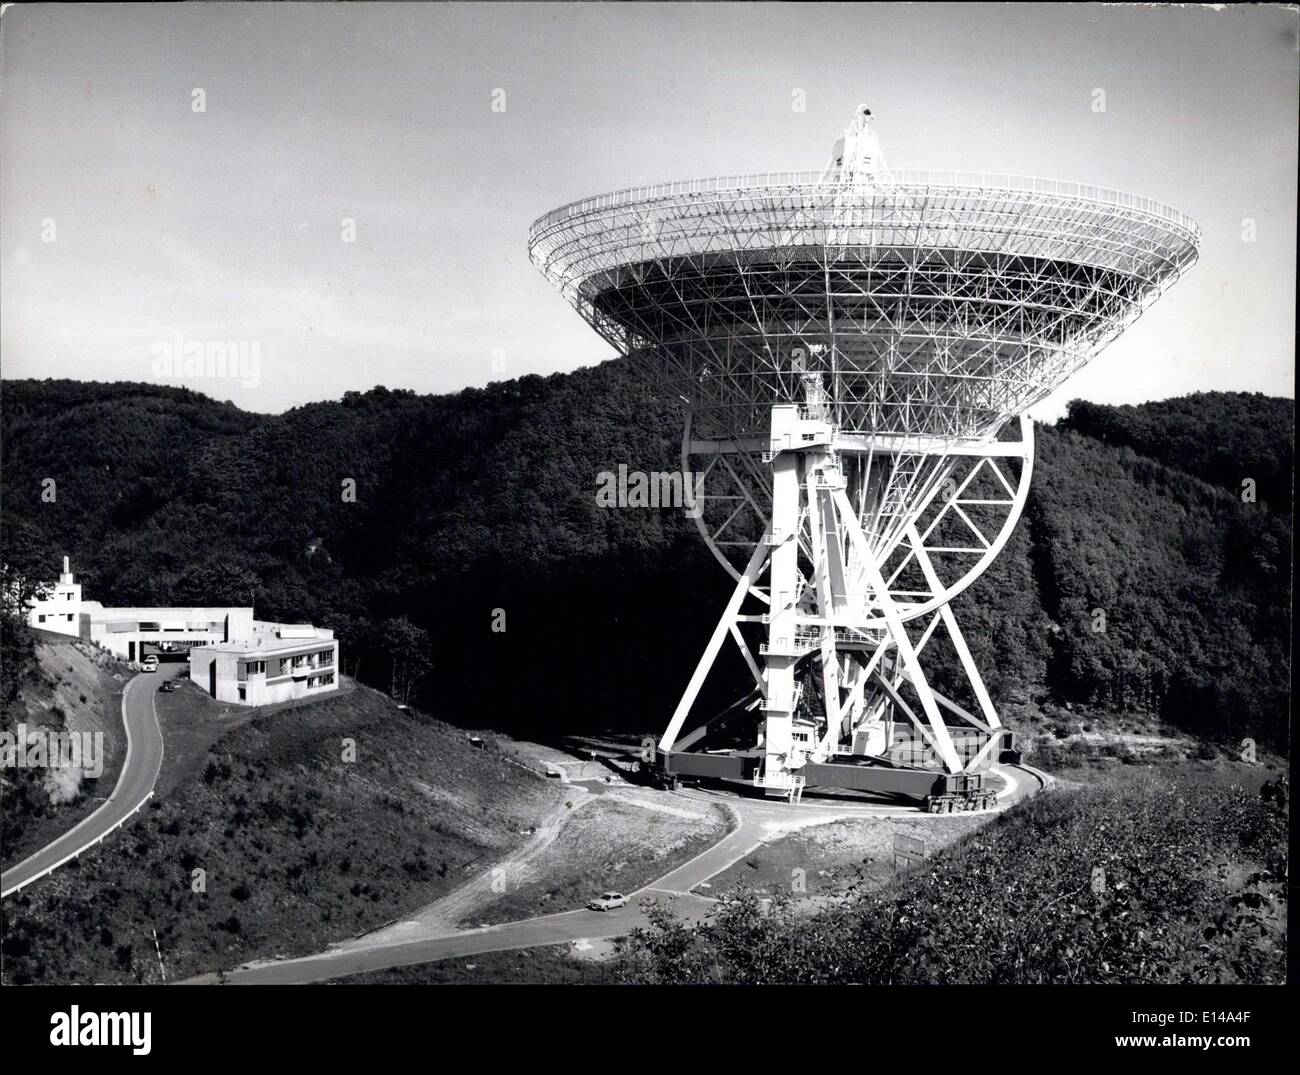 Abril 17, 2012 - el mayor radiotelescopio del mundo: fue construido por la empresa Friedrich Krupp por el Instituto Max Planck para la radioastronomía. Está situado cerca de Effelsberg en las montañas de Eifel. Se puso en funcionamiento en el otoño de 1970. Es el espejo parabólico es de 100 metros de diámetro. Foto de stock